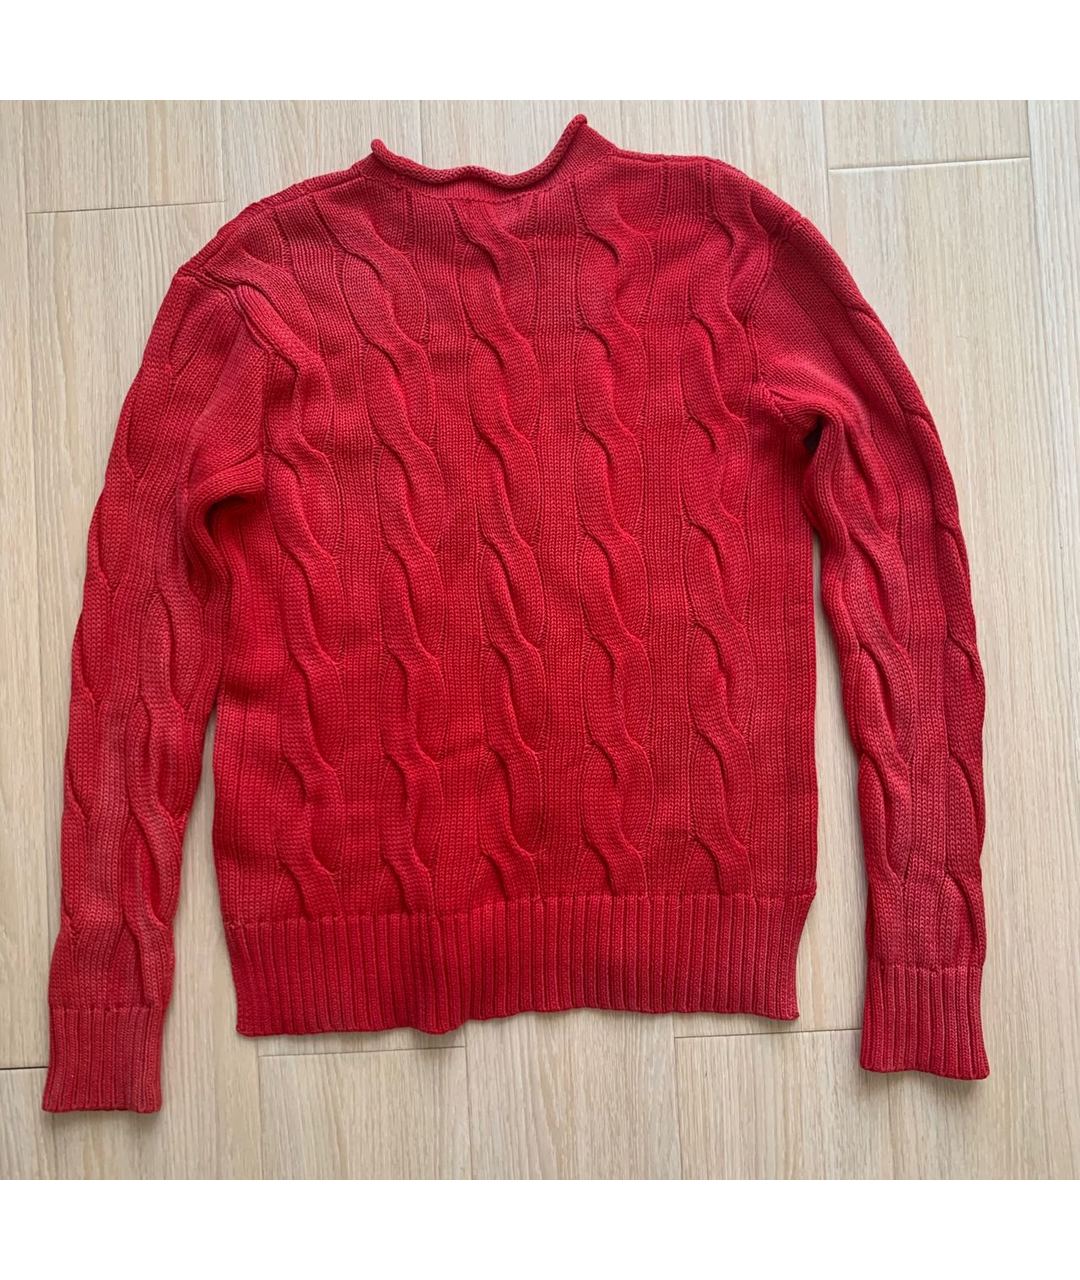 POLO RALPH LAUREN Красный хлопковый джемпер / свитер, фото 2